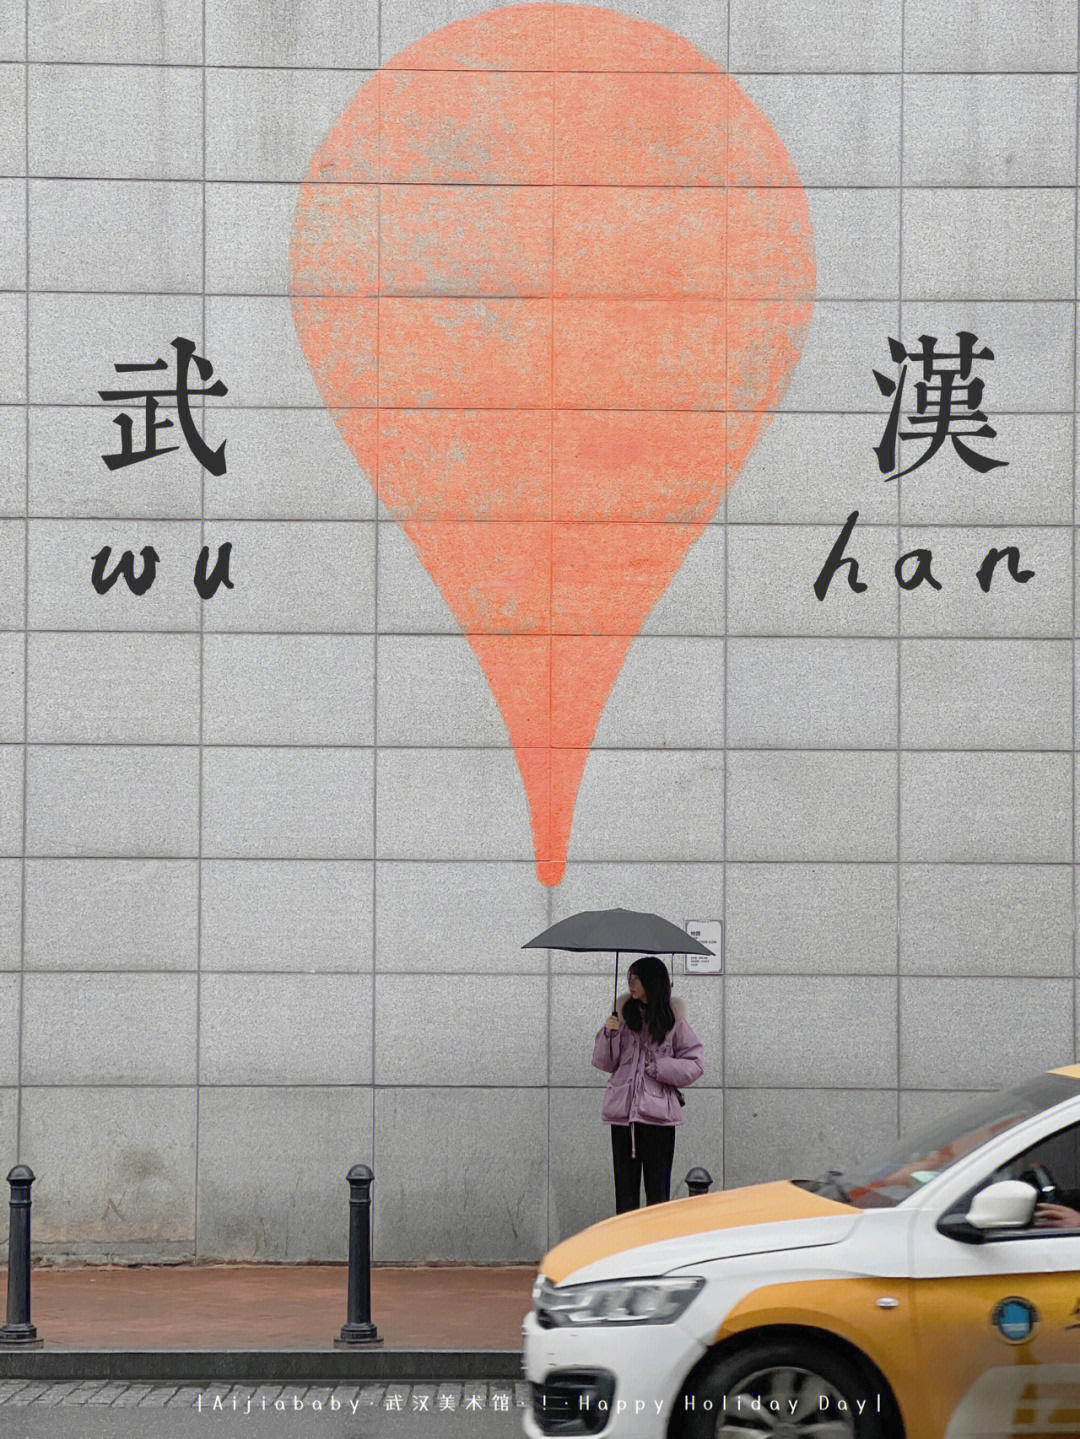 武汉美术馆看到了75雨天也有雨天的氛围